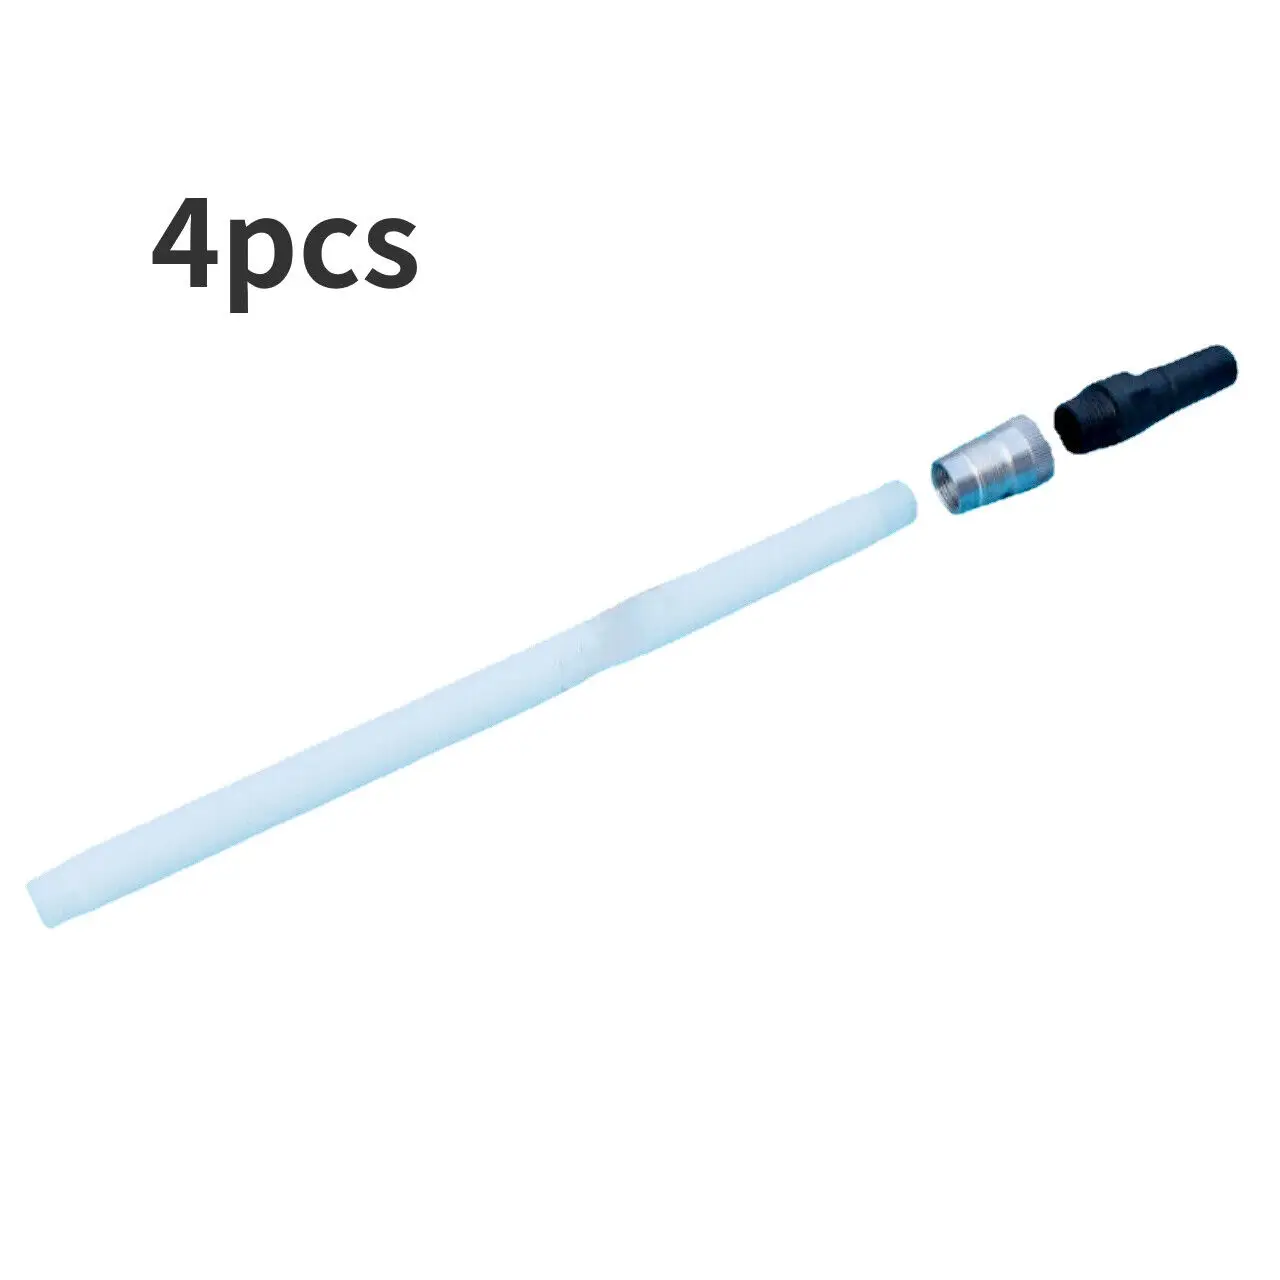 

4 pcs powder tube 1001289 For 2-AE1 GA01 -AE1 GEMA automatic powder gun OptiGun